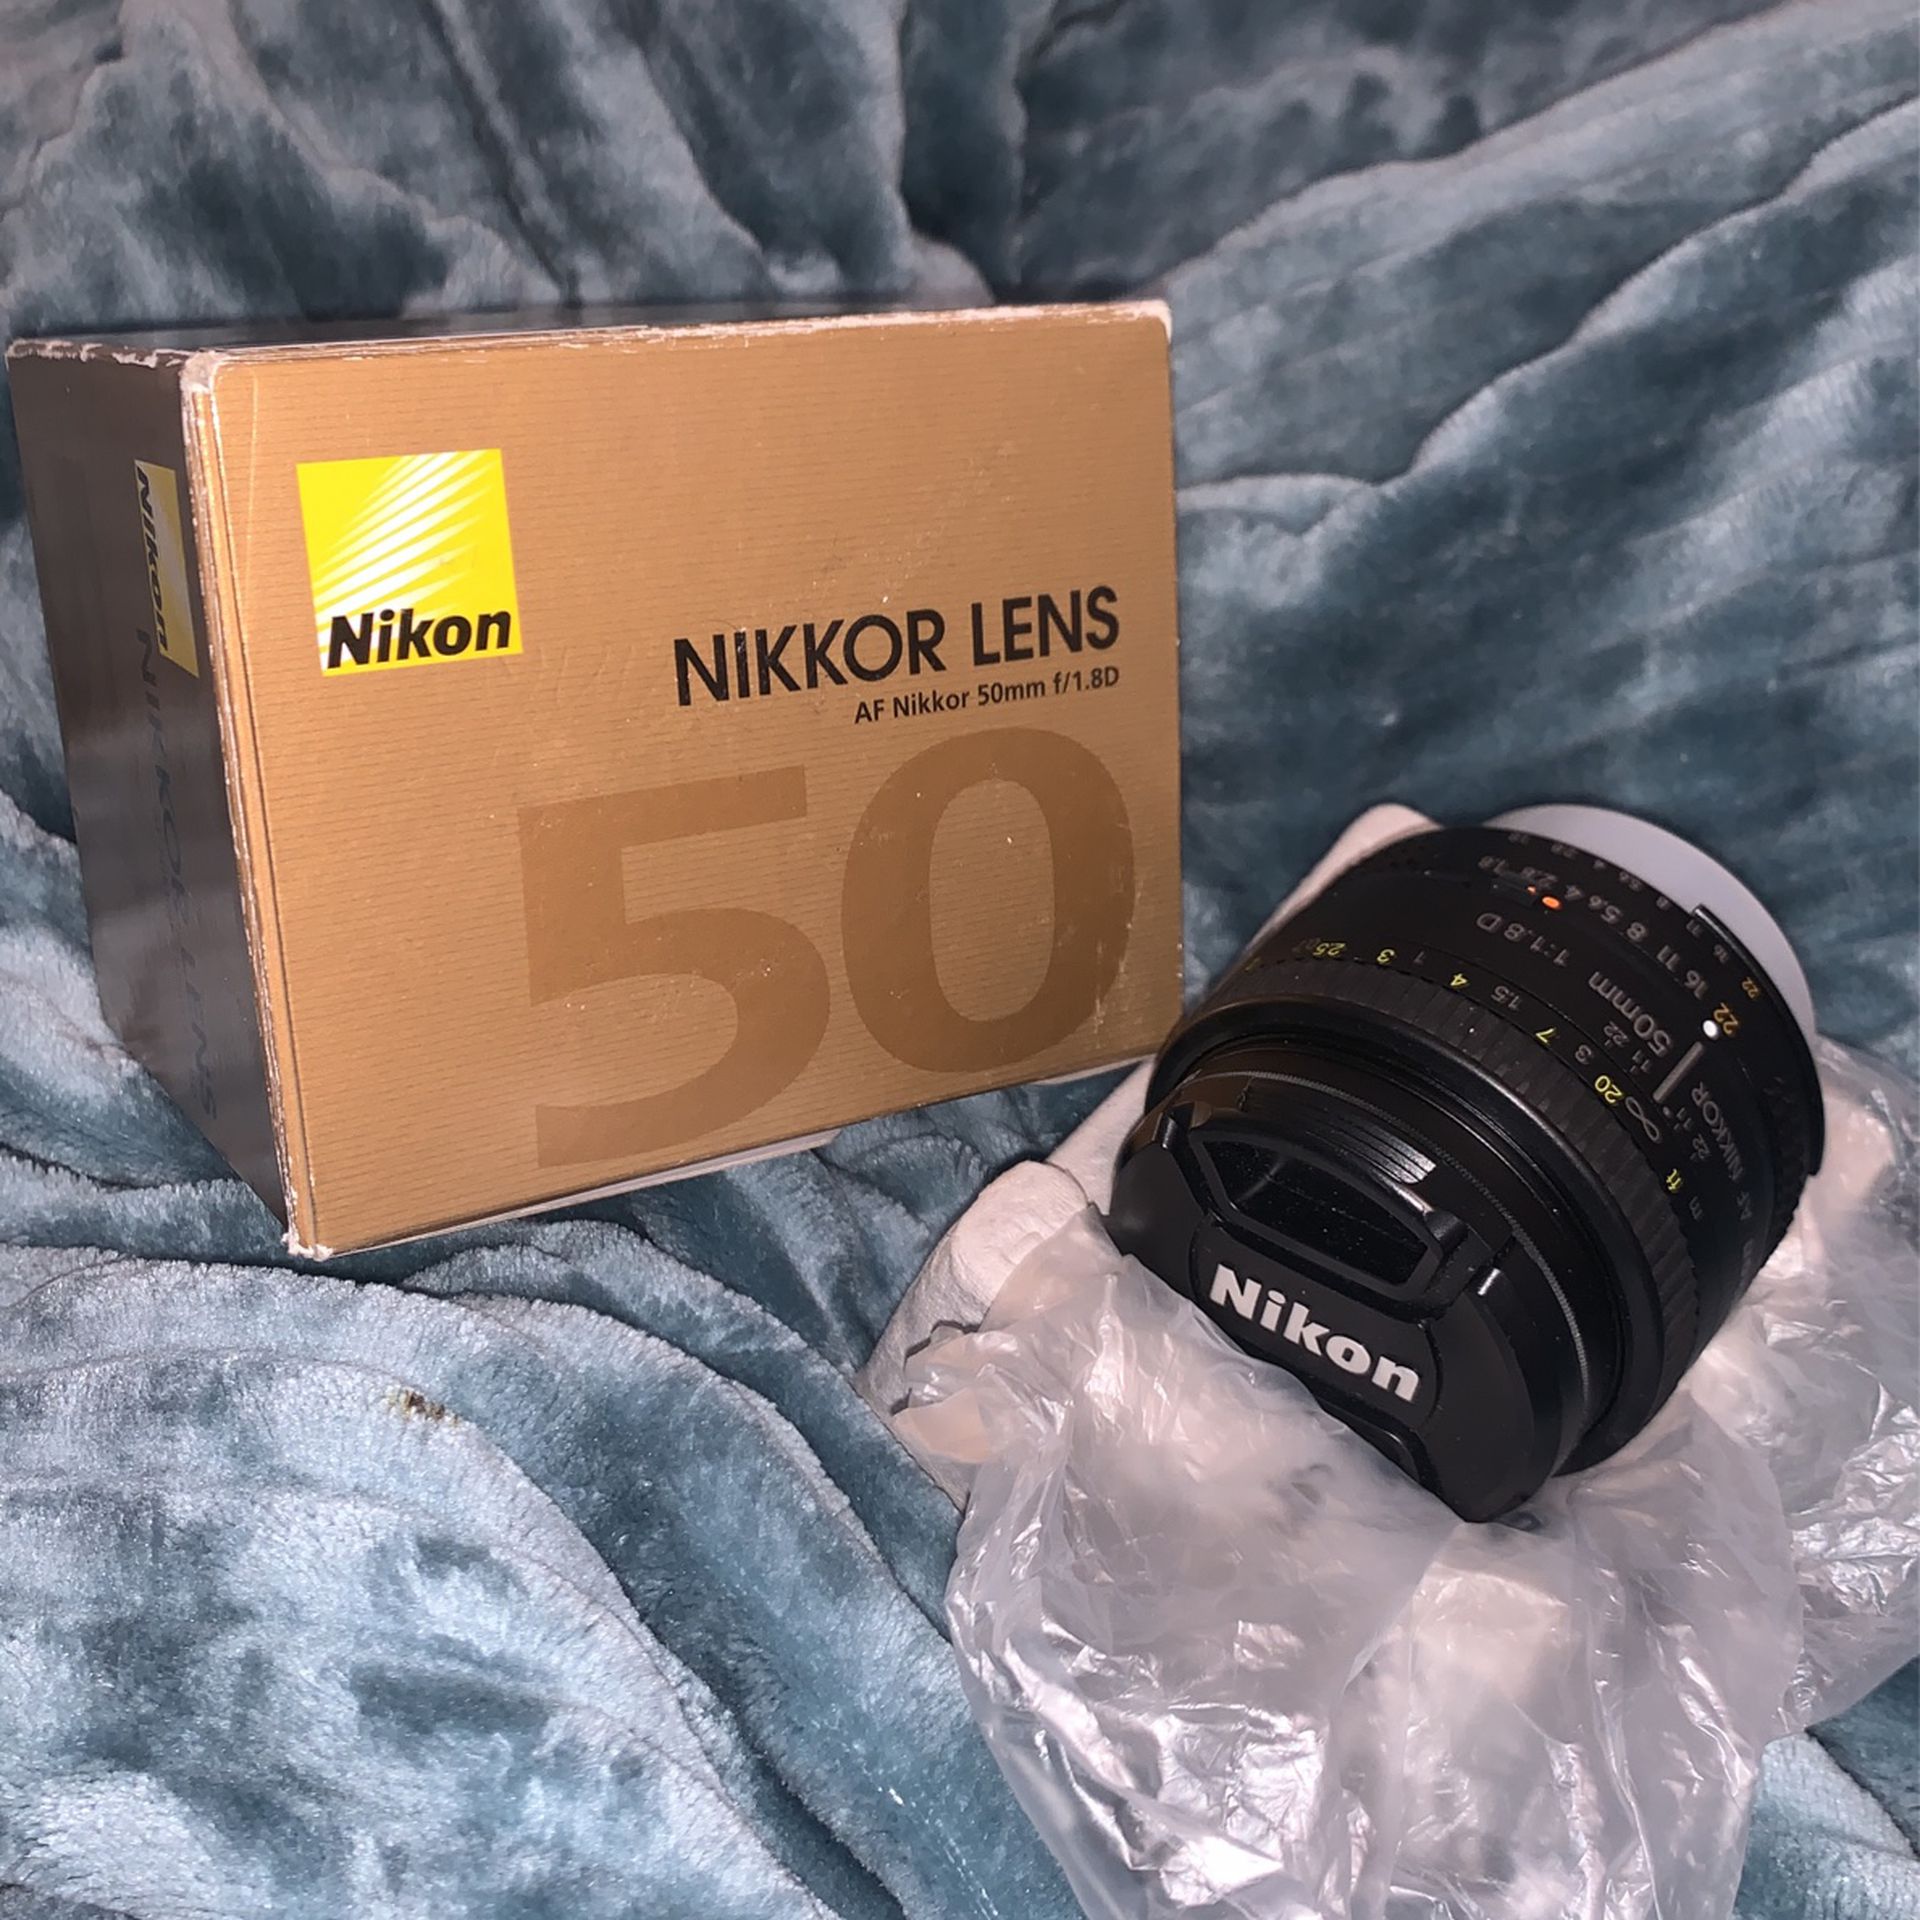 Nikon Nikkor Lens 50mm f/1.8D